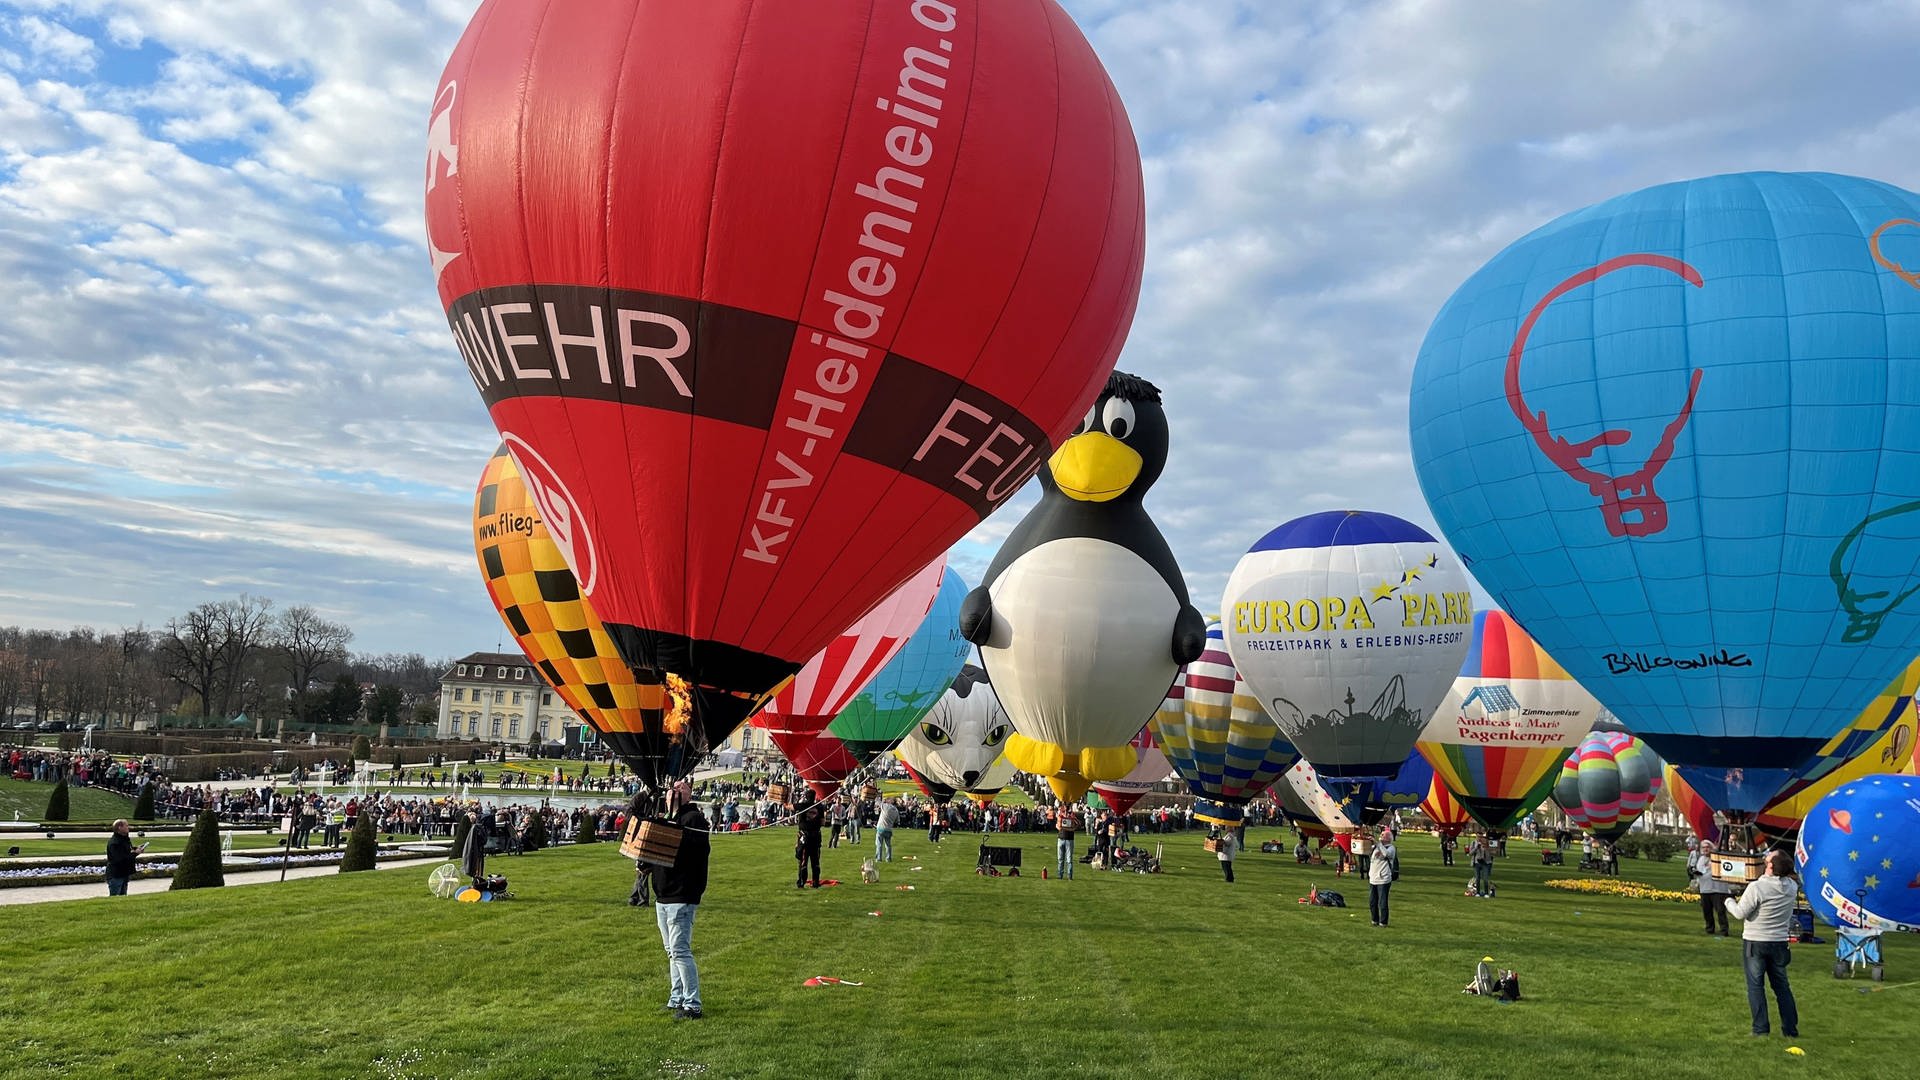 Weltrekord in Ludwigsburg: 81 Modellballone im Blühenden Barock in der Luft